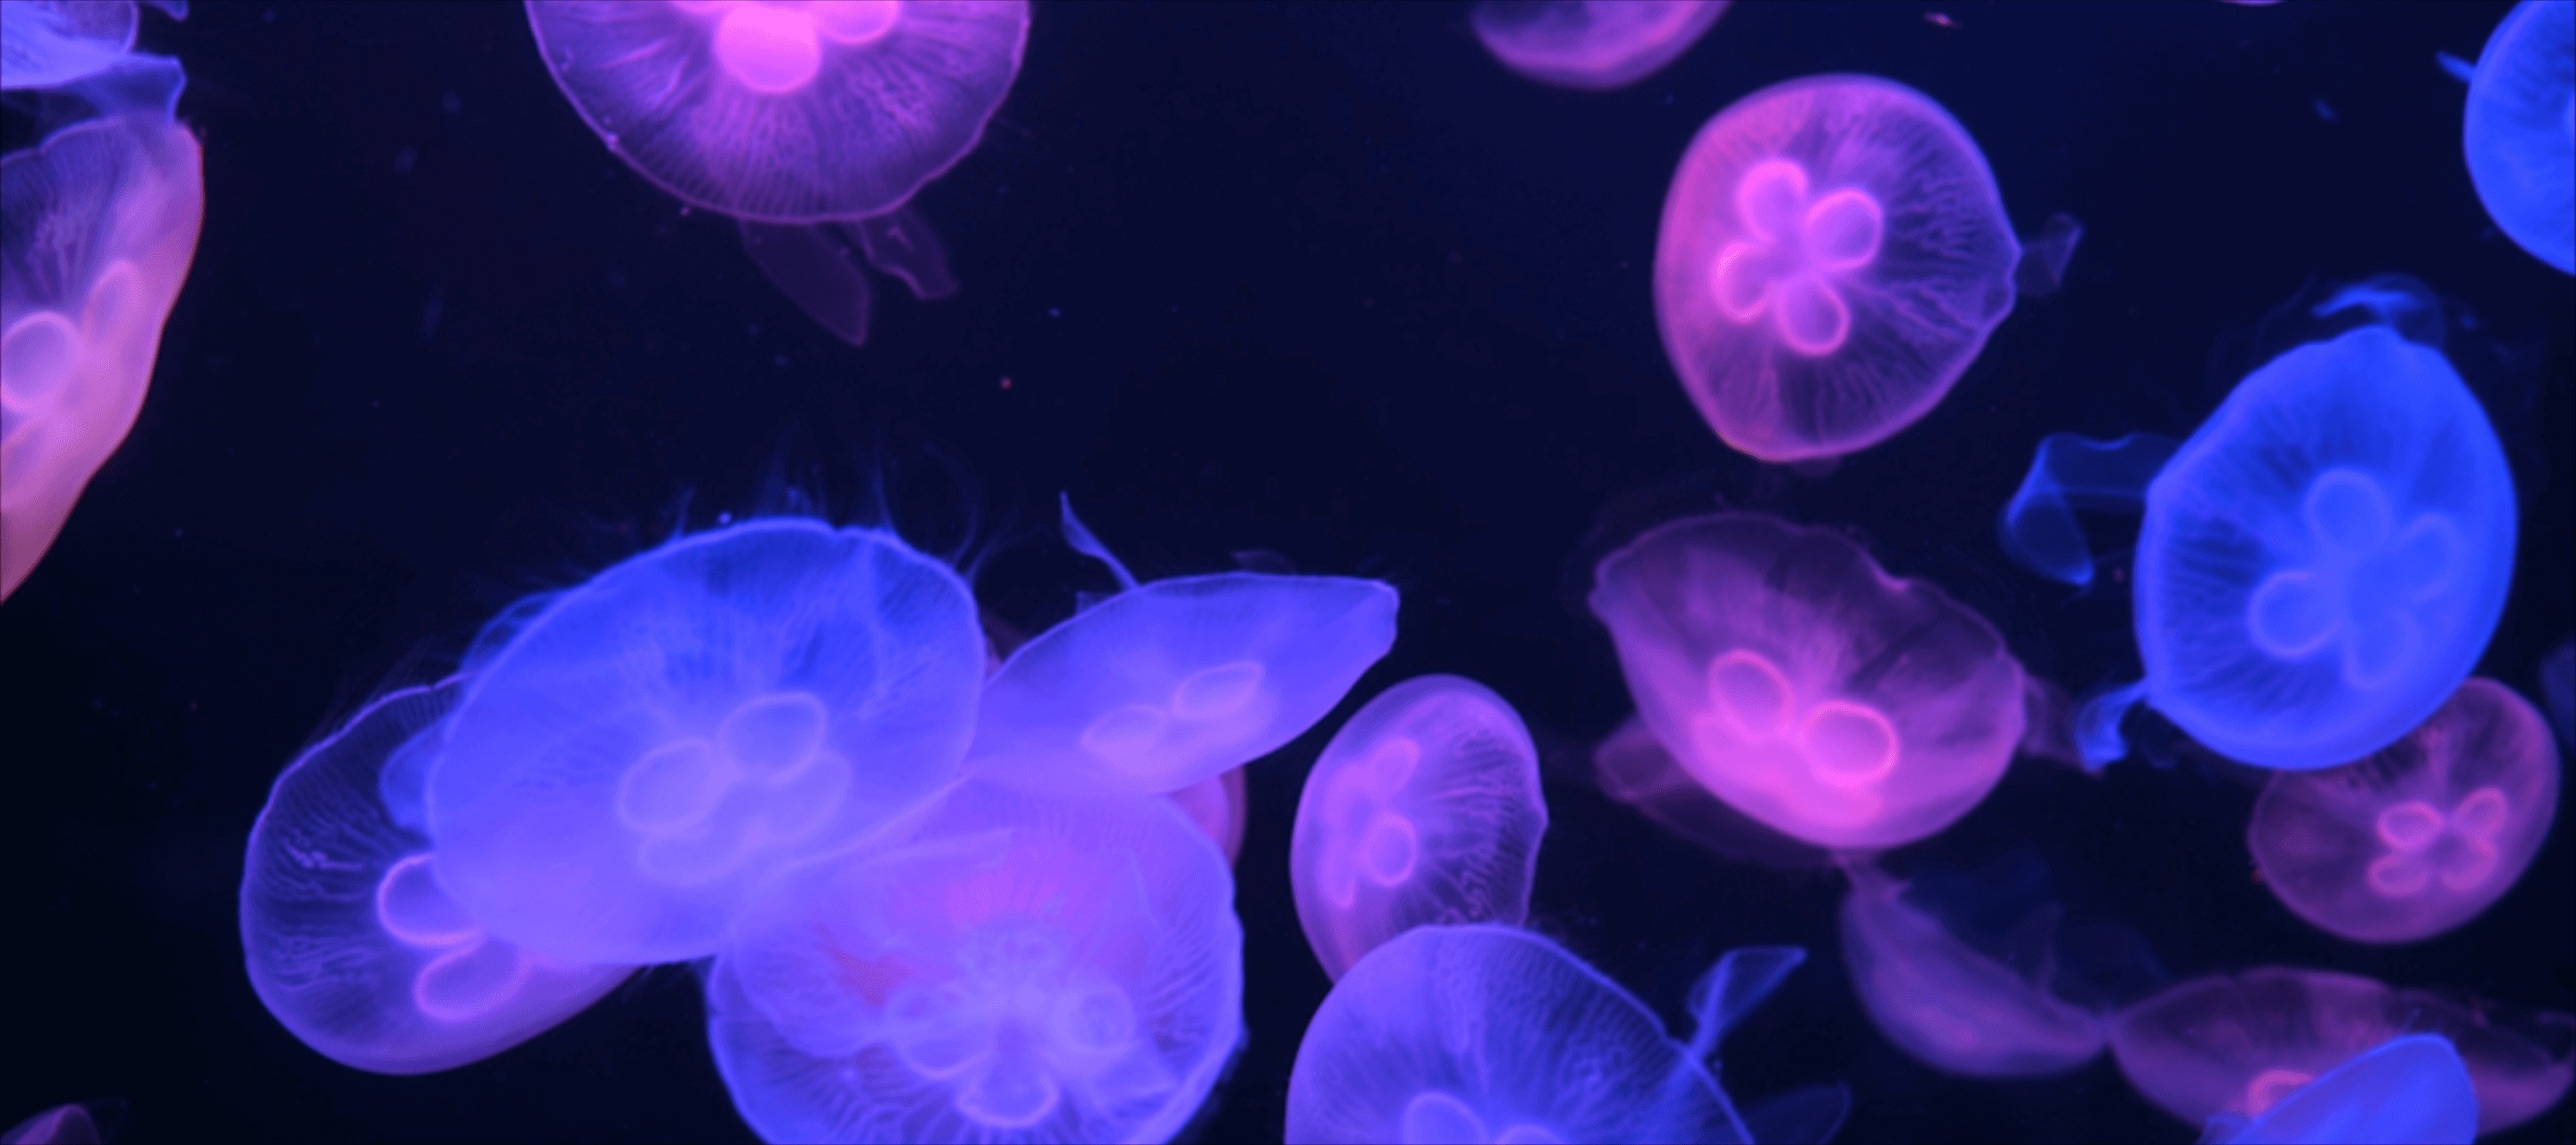 macro image of jellyfish